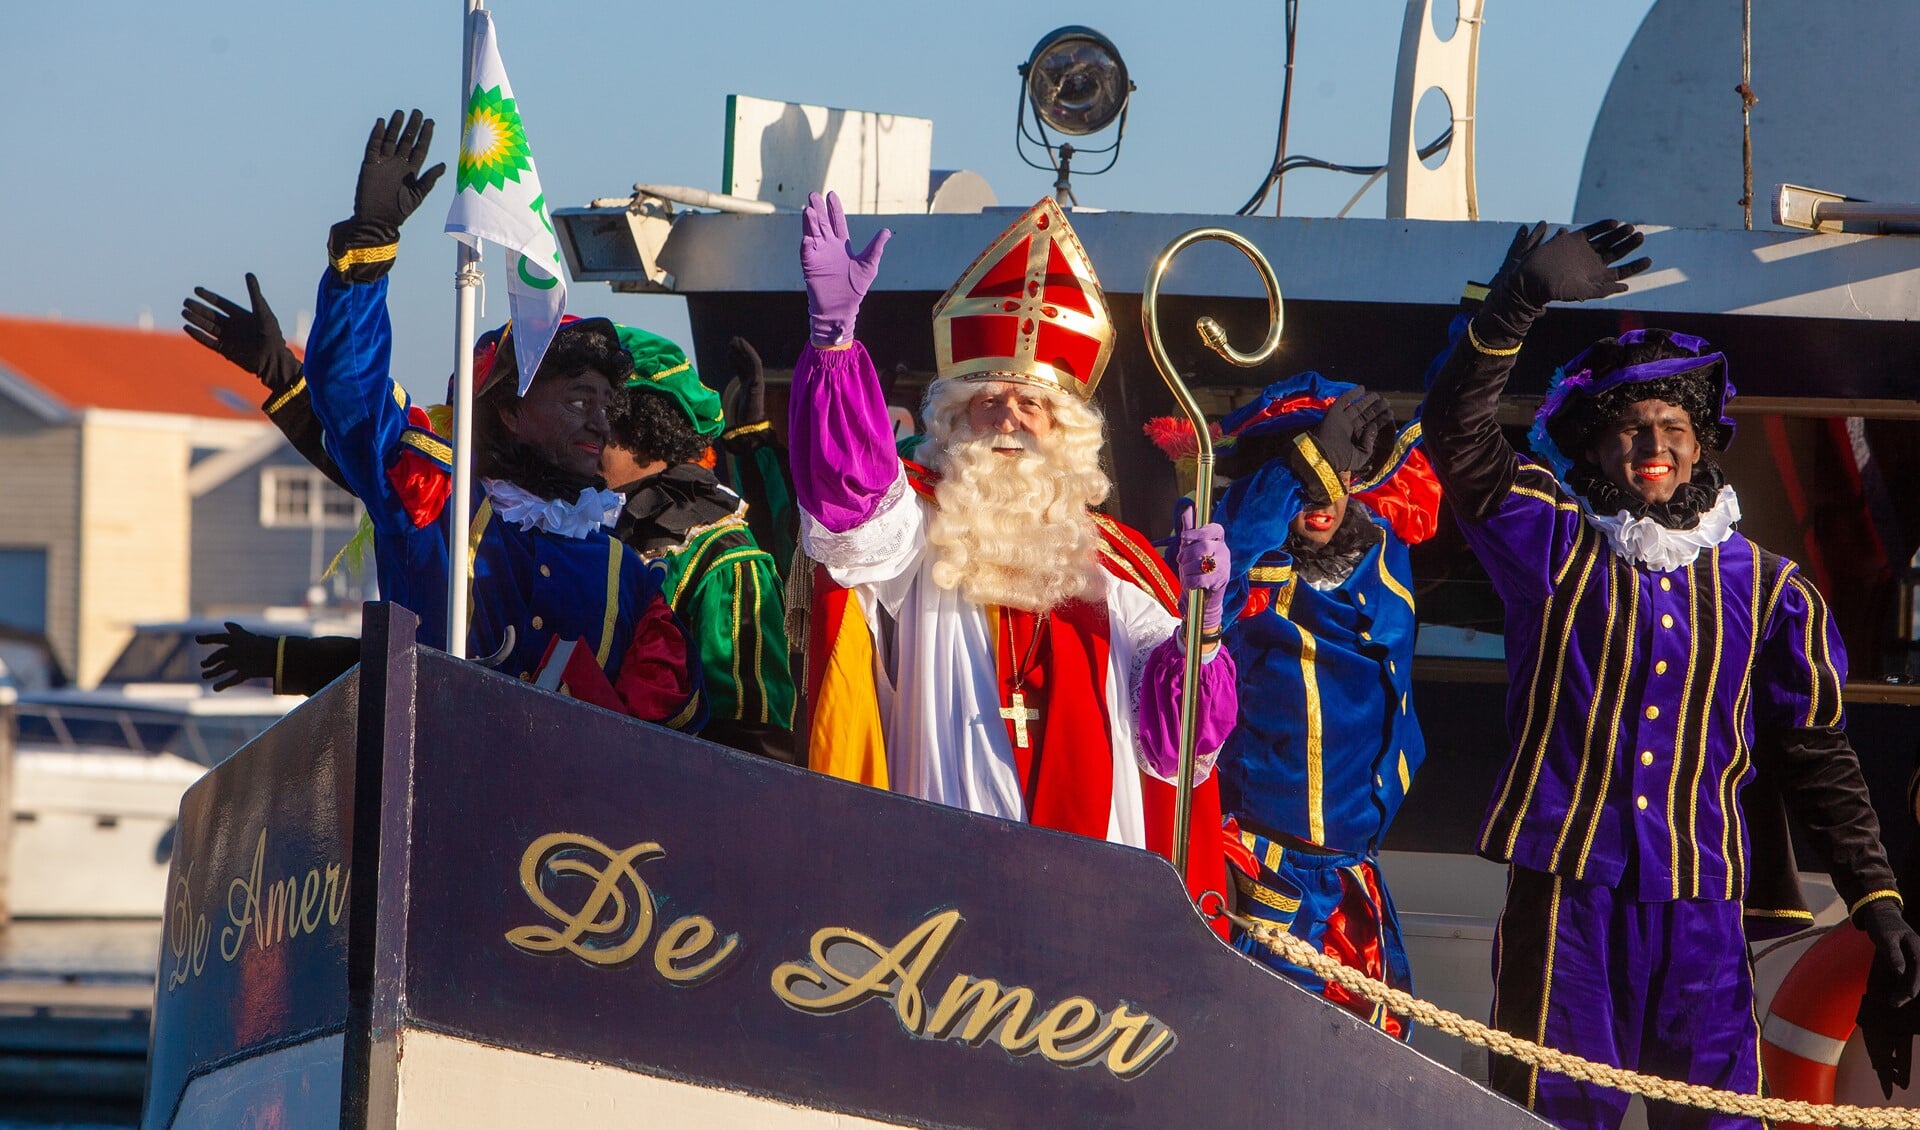 Op zaterdag 16 november komt Sinterklaas ook weer in Huizen aan.